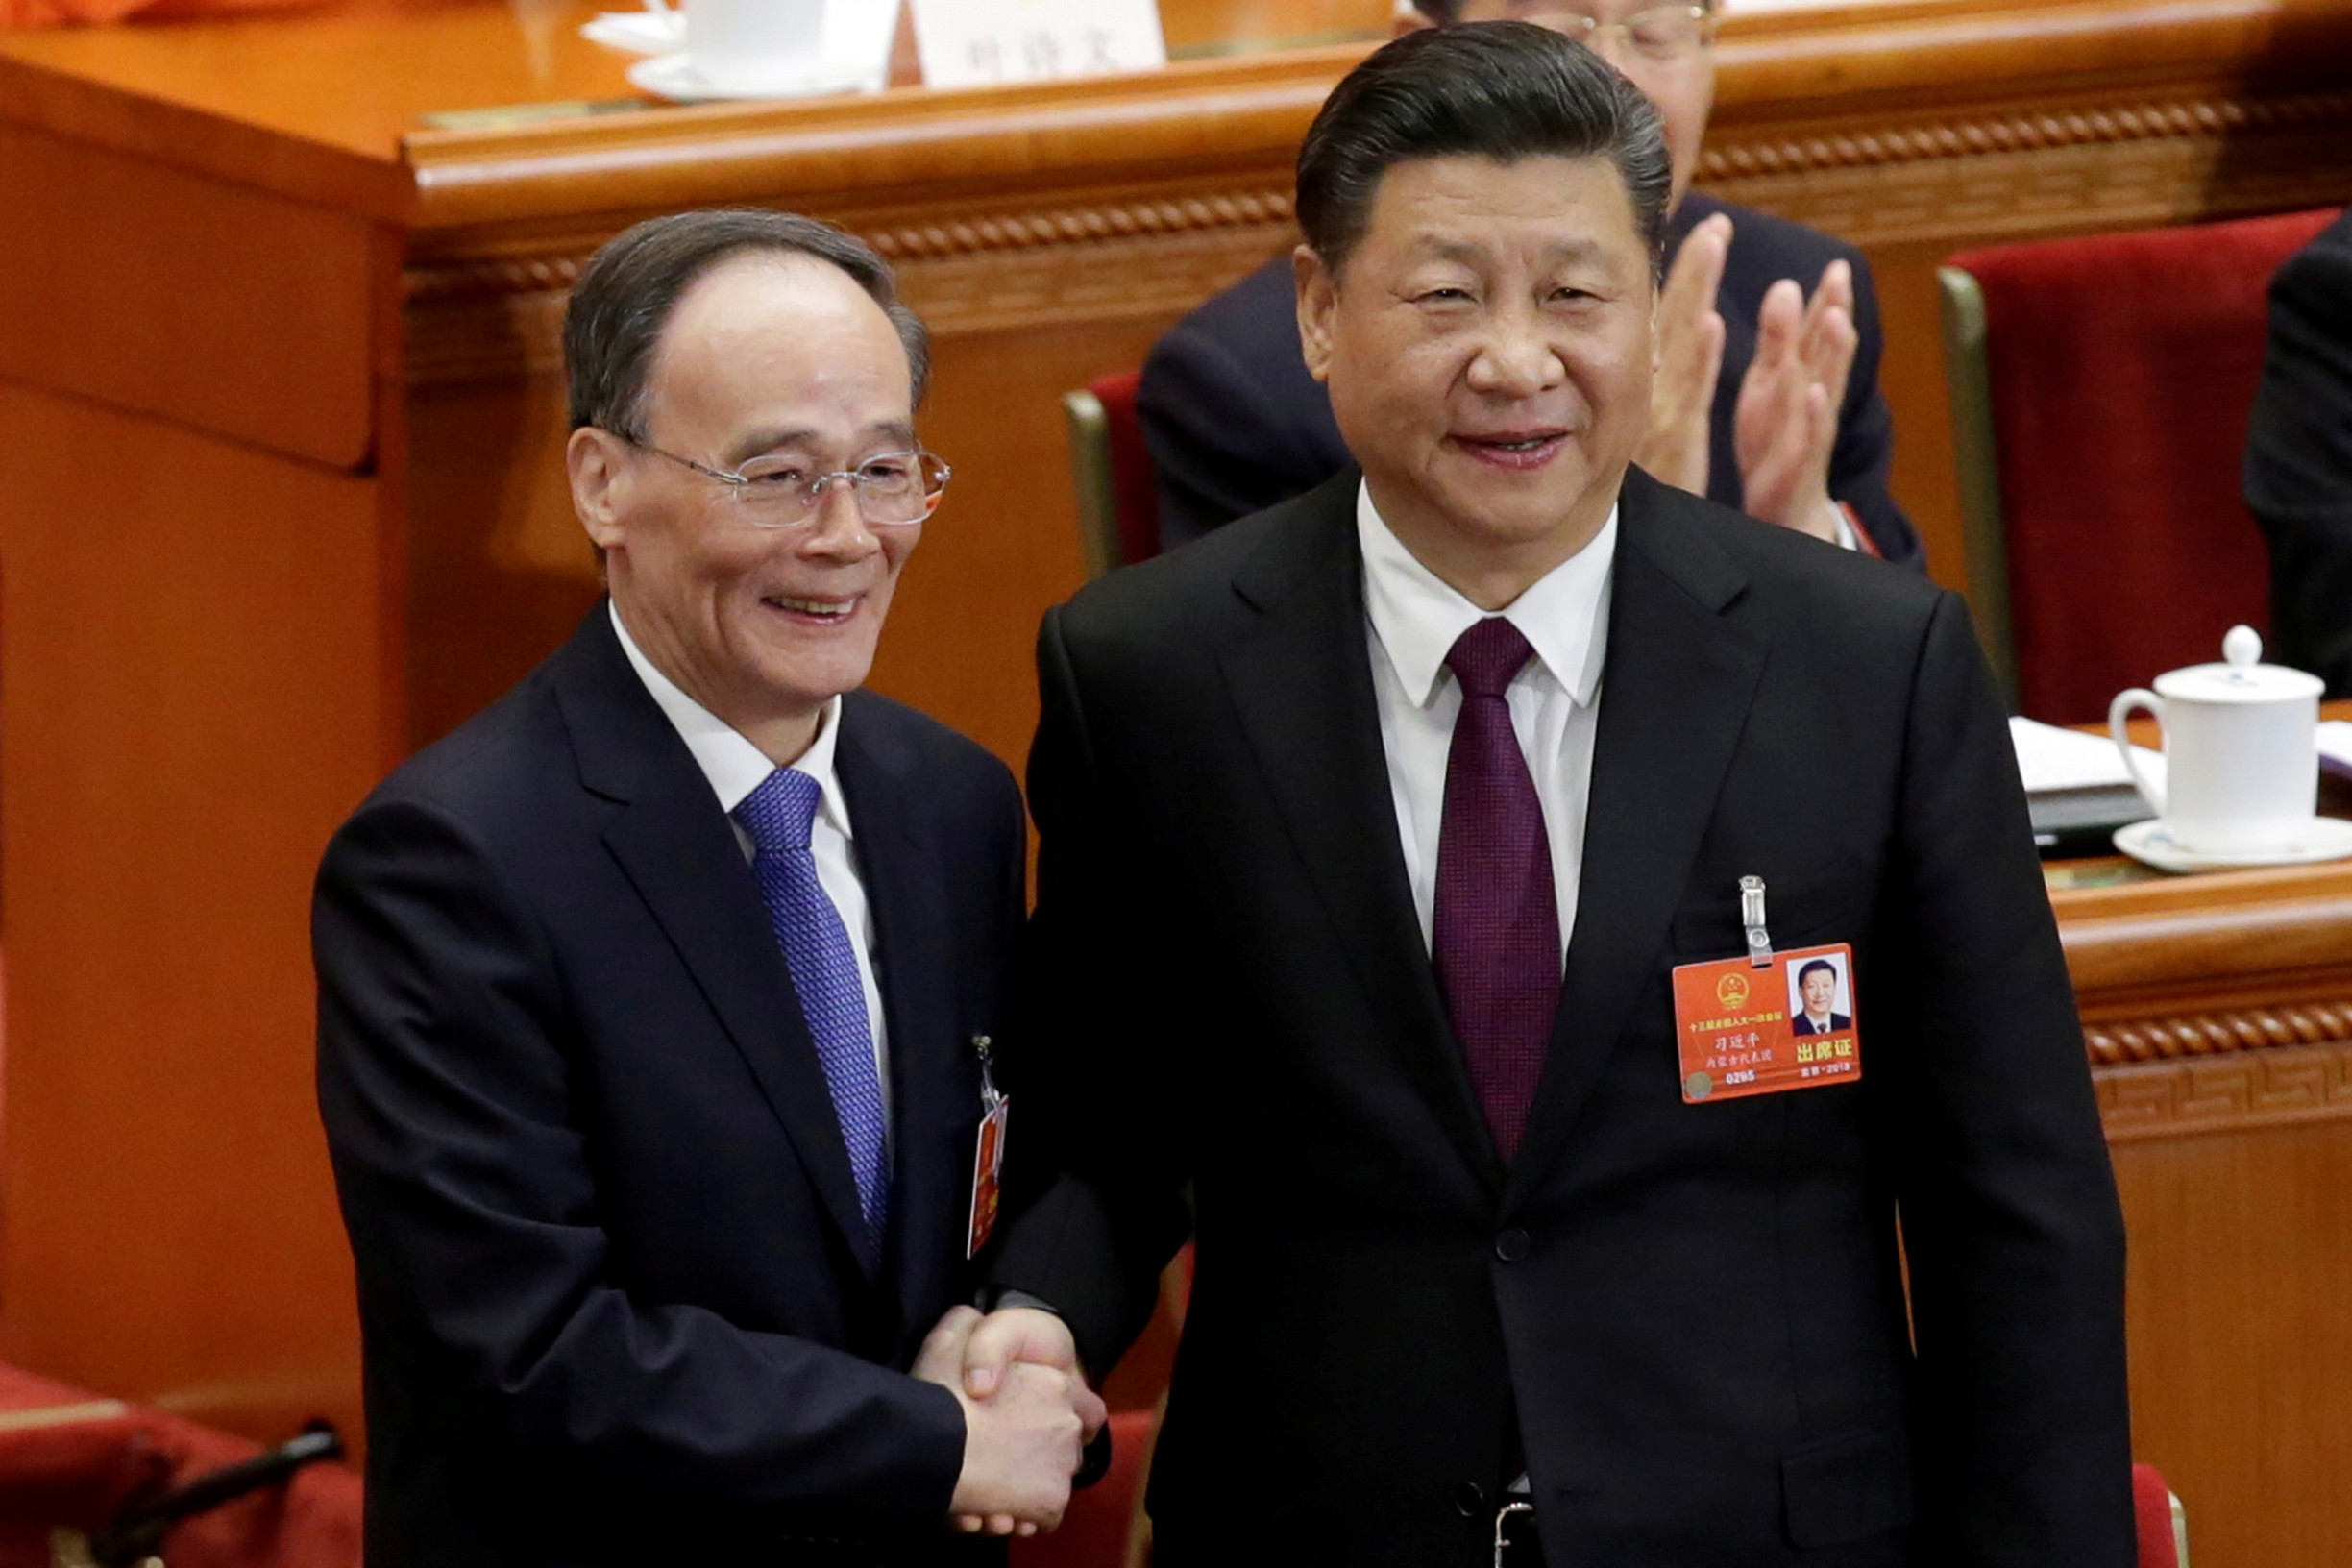 Vedl obávaný výbor proti korupci. Teď čínskému viceprezidentovi vyšetřují „úplatnou“ pravou ruku